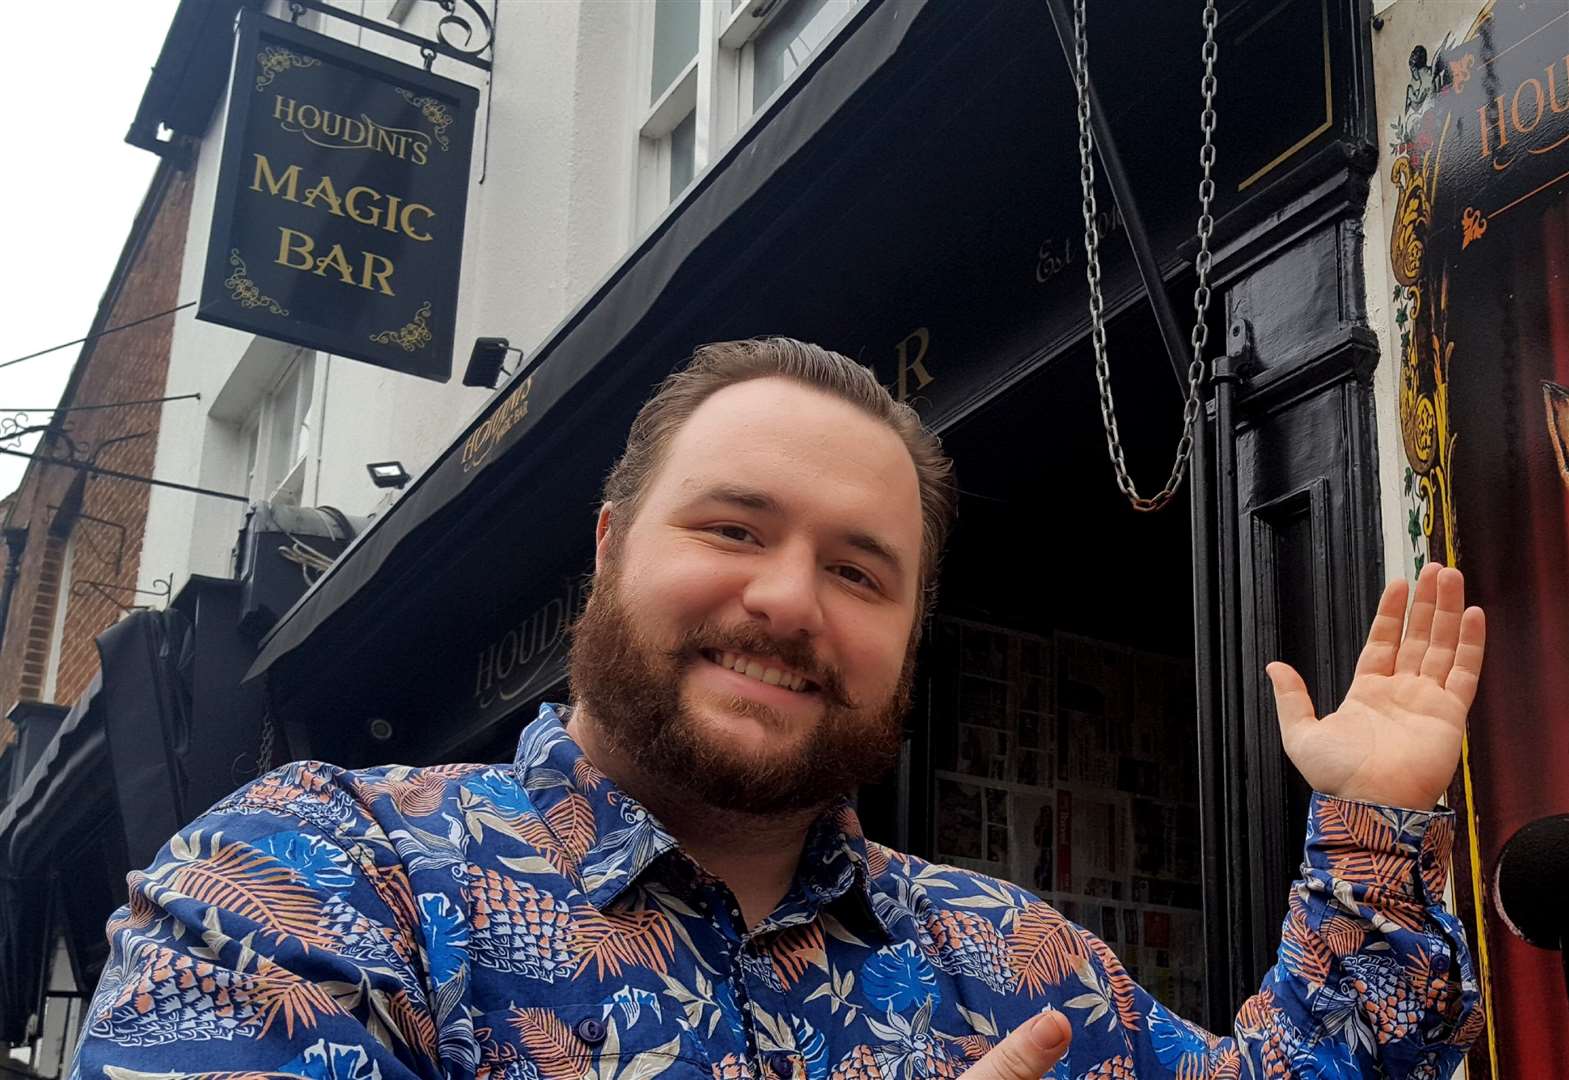 Magic man Sam Watson of Houdini's Magic Bar